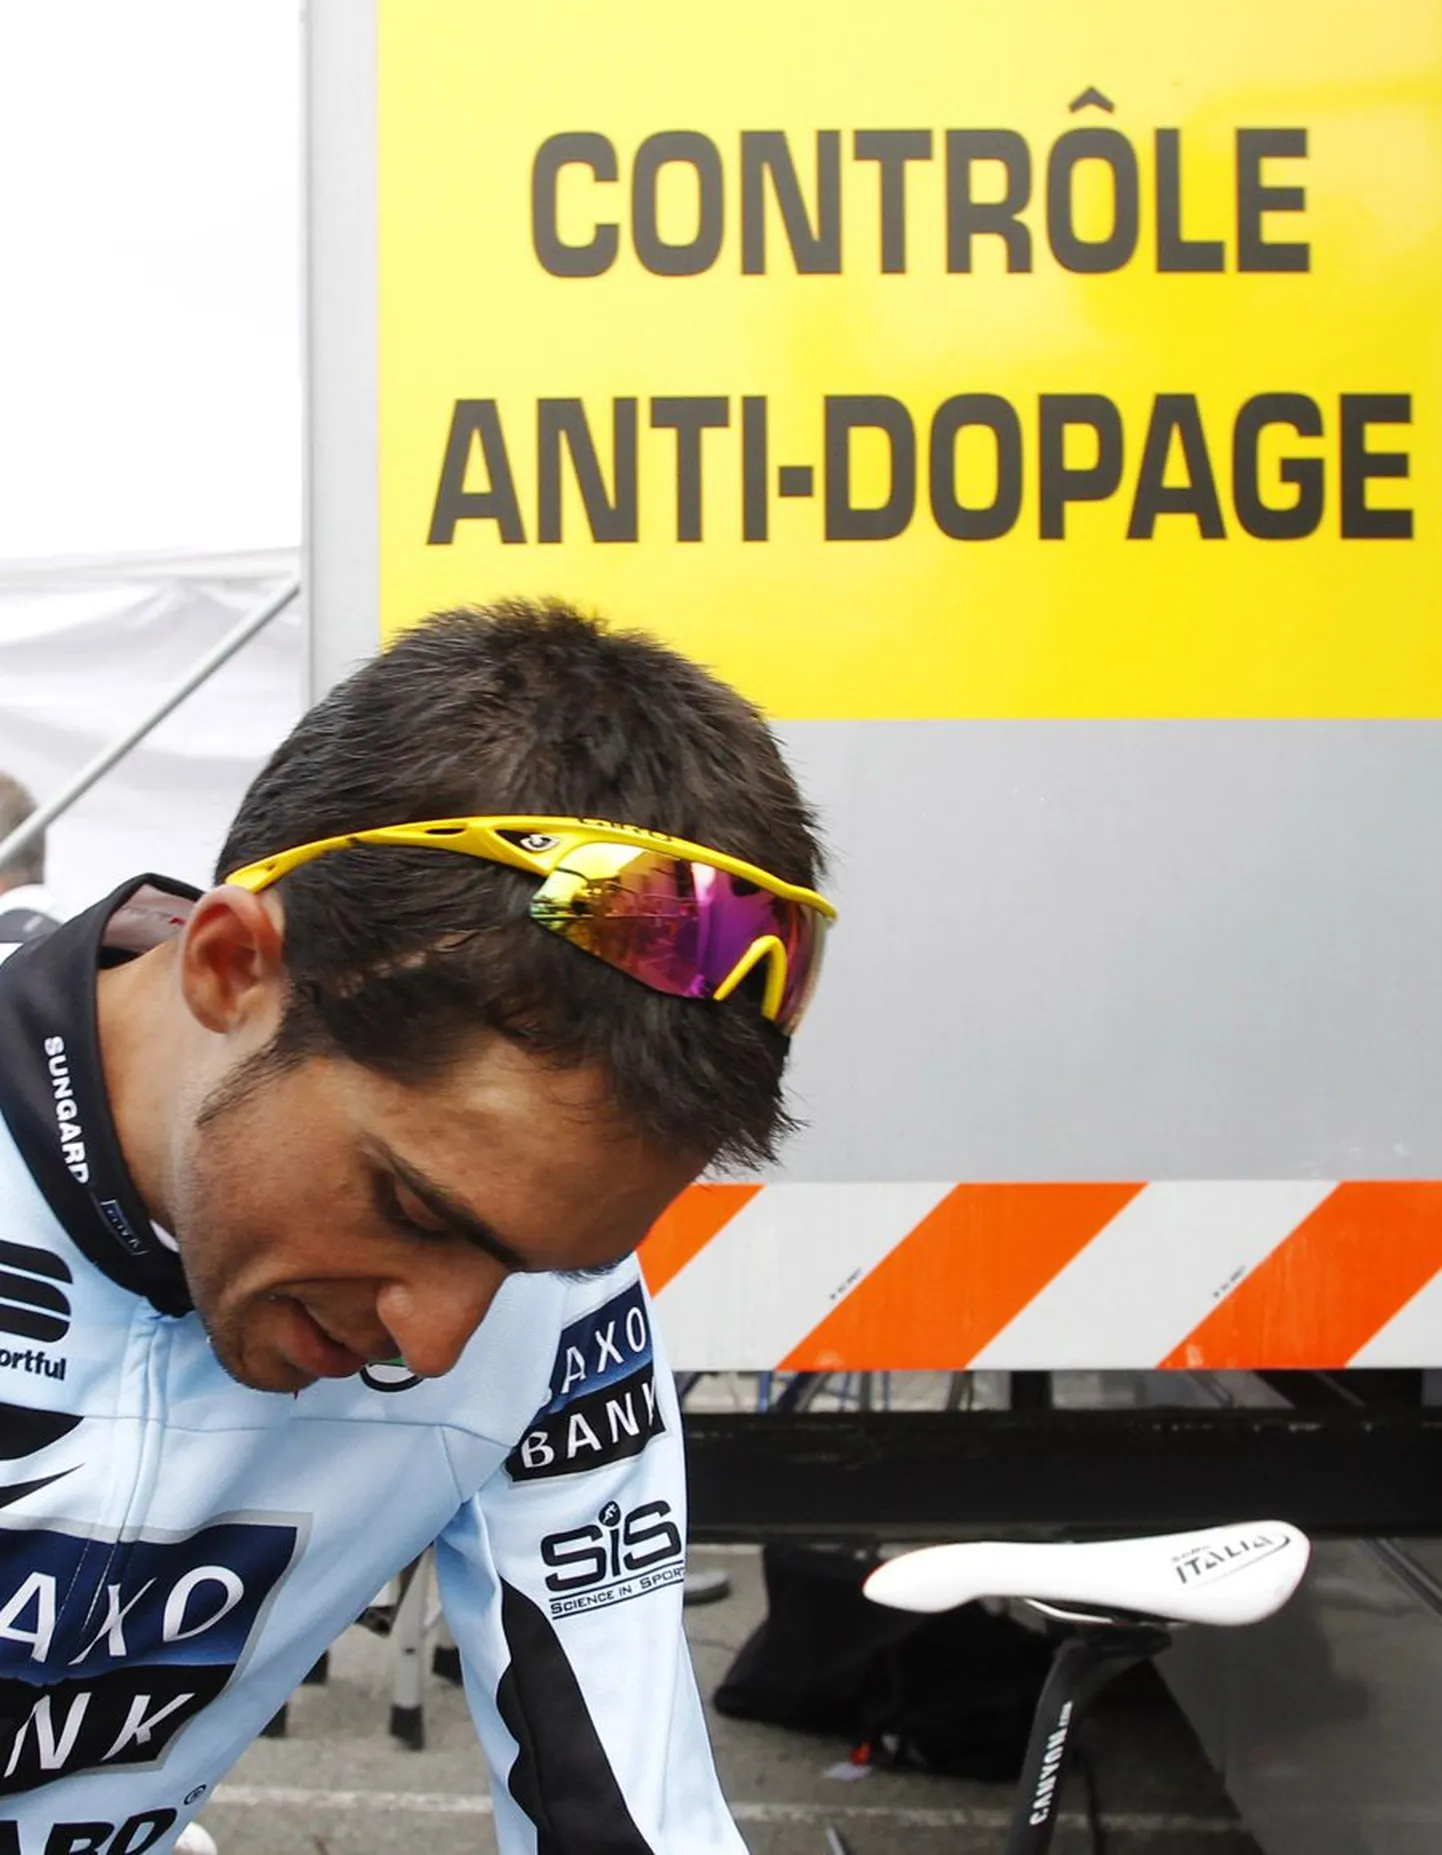 Alberto Contadoril ei õnnestunud spordiarbitraaži oma süütuses veenda ning talle määrati dopingutarvitamise eest kaheaastane võistluskeeld.